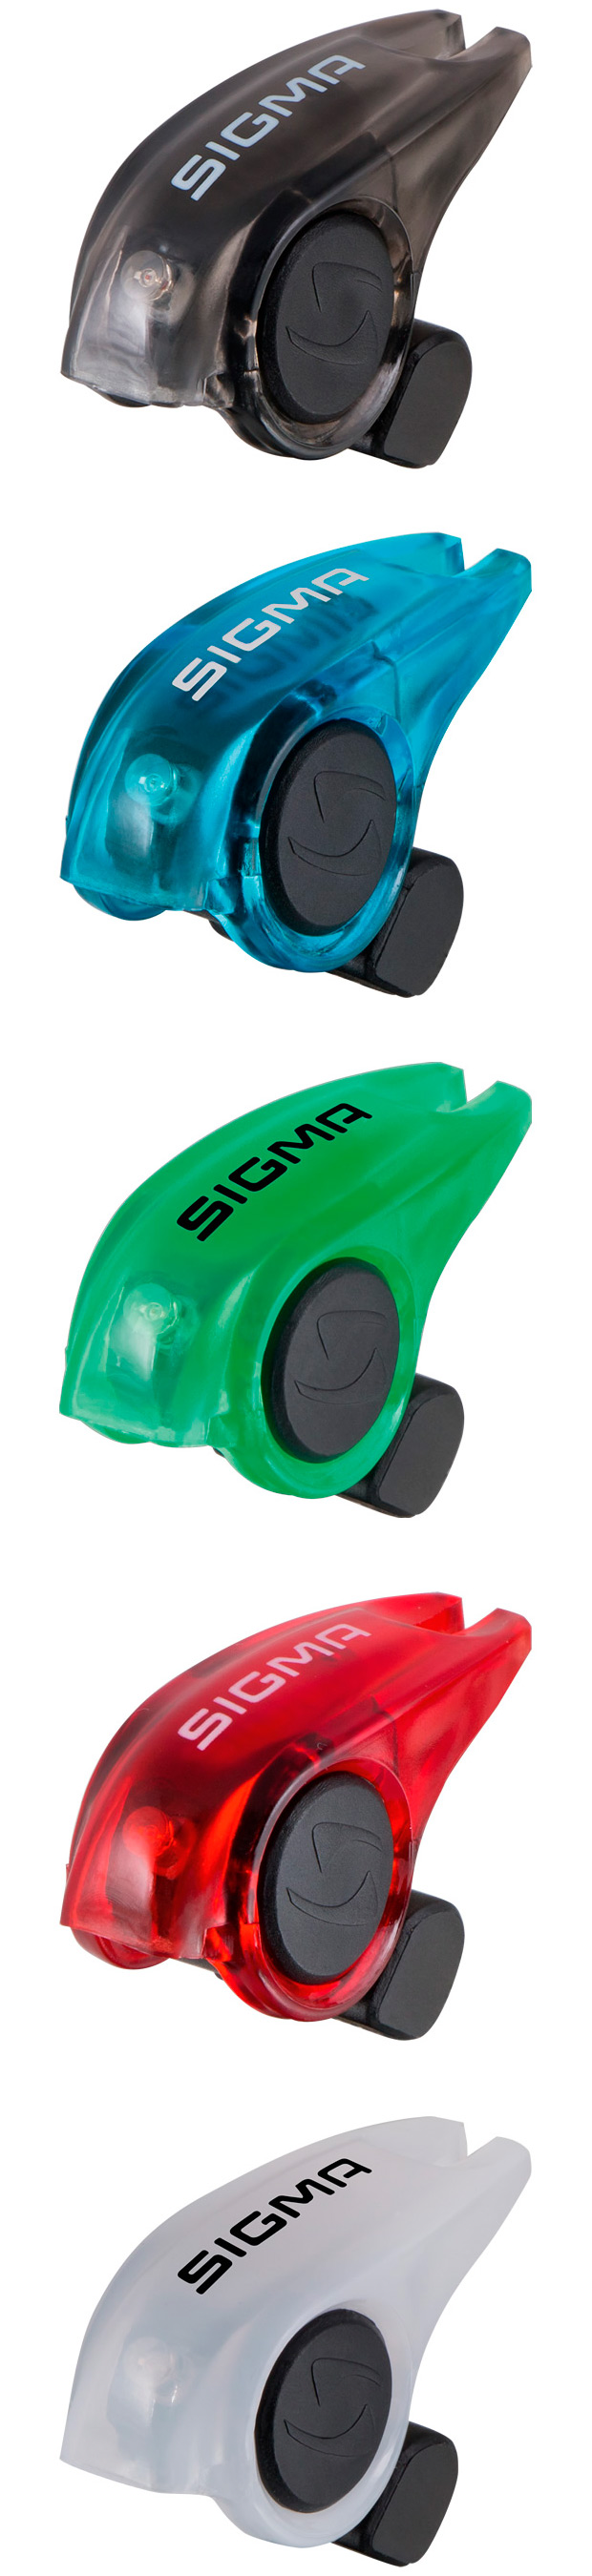 Sigma Brakelight, una luz de freno para mejorar la seguridad de los ciclistas